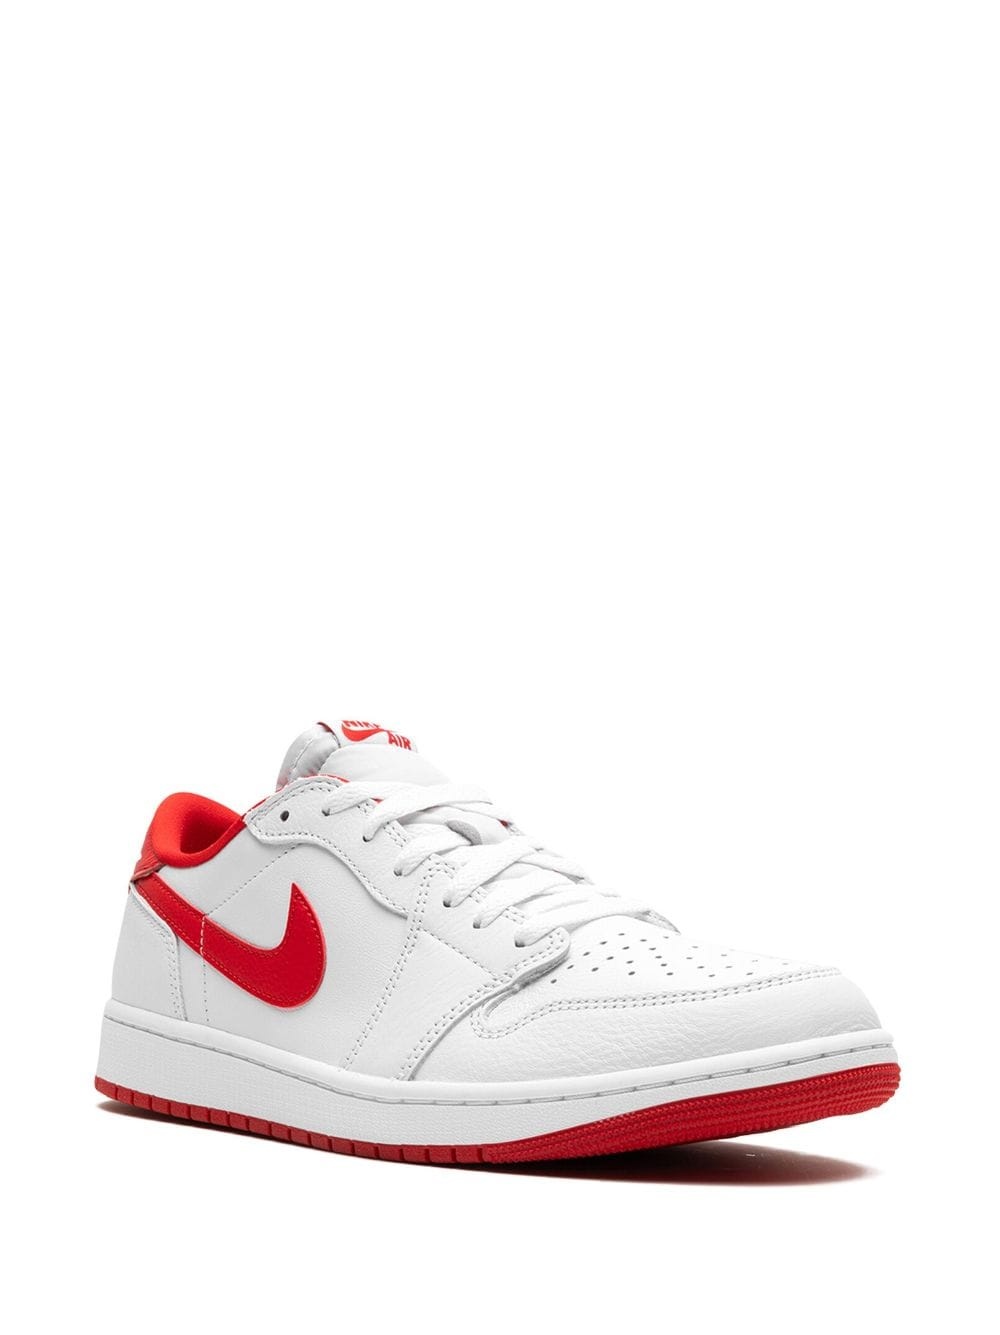 Air Jordan 1 Low OG "University Red" sneakers - 2